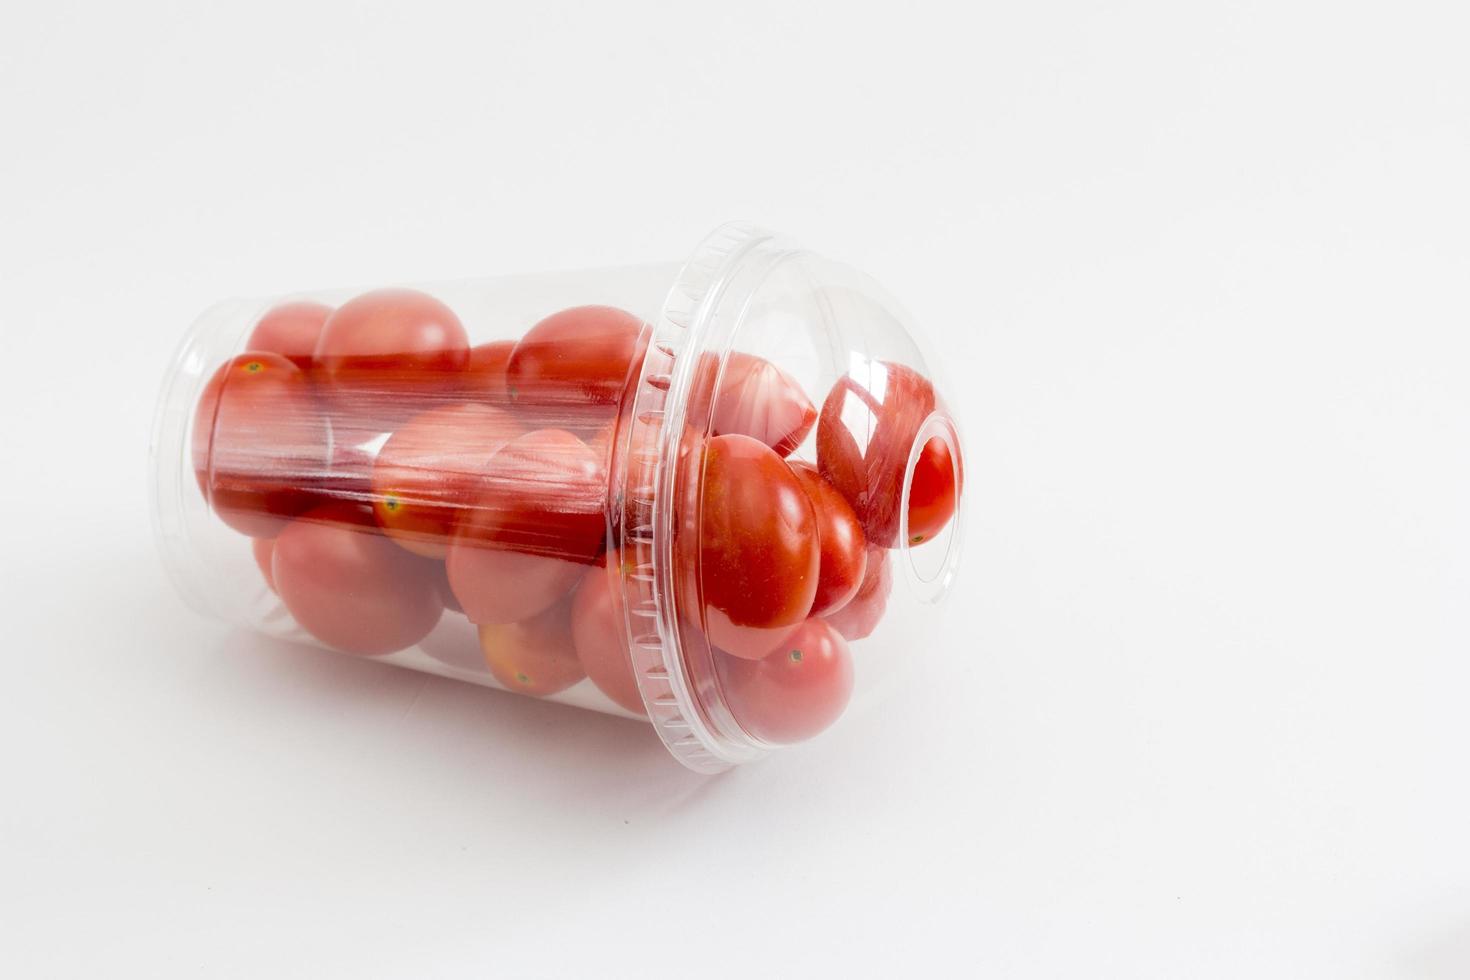 cherrytomaatjes in een doorzichtige plartic bx foto